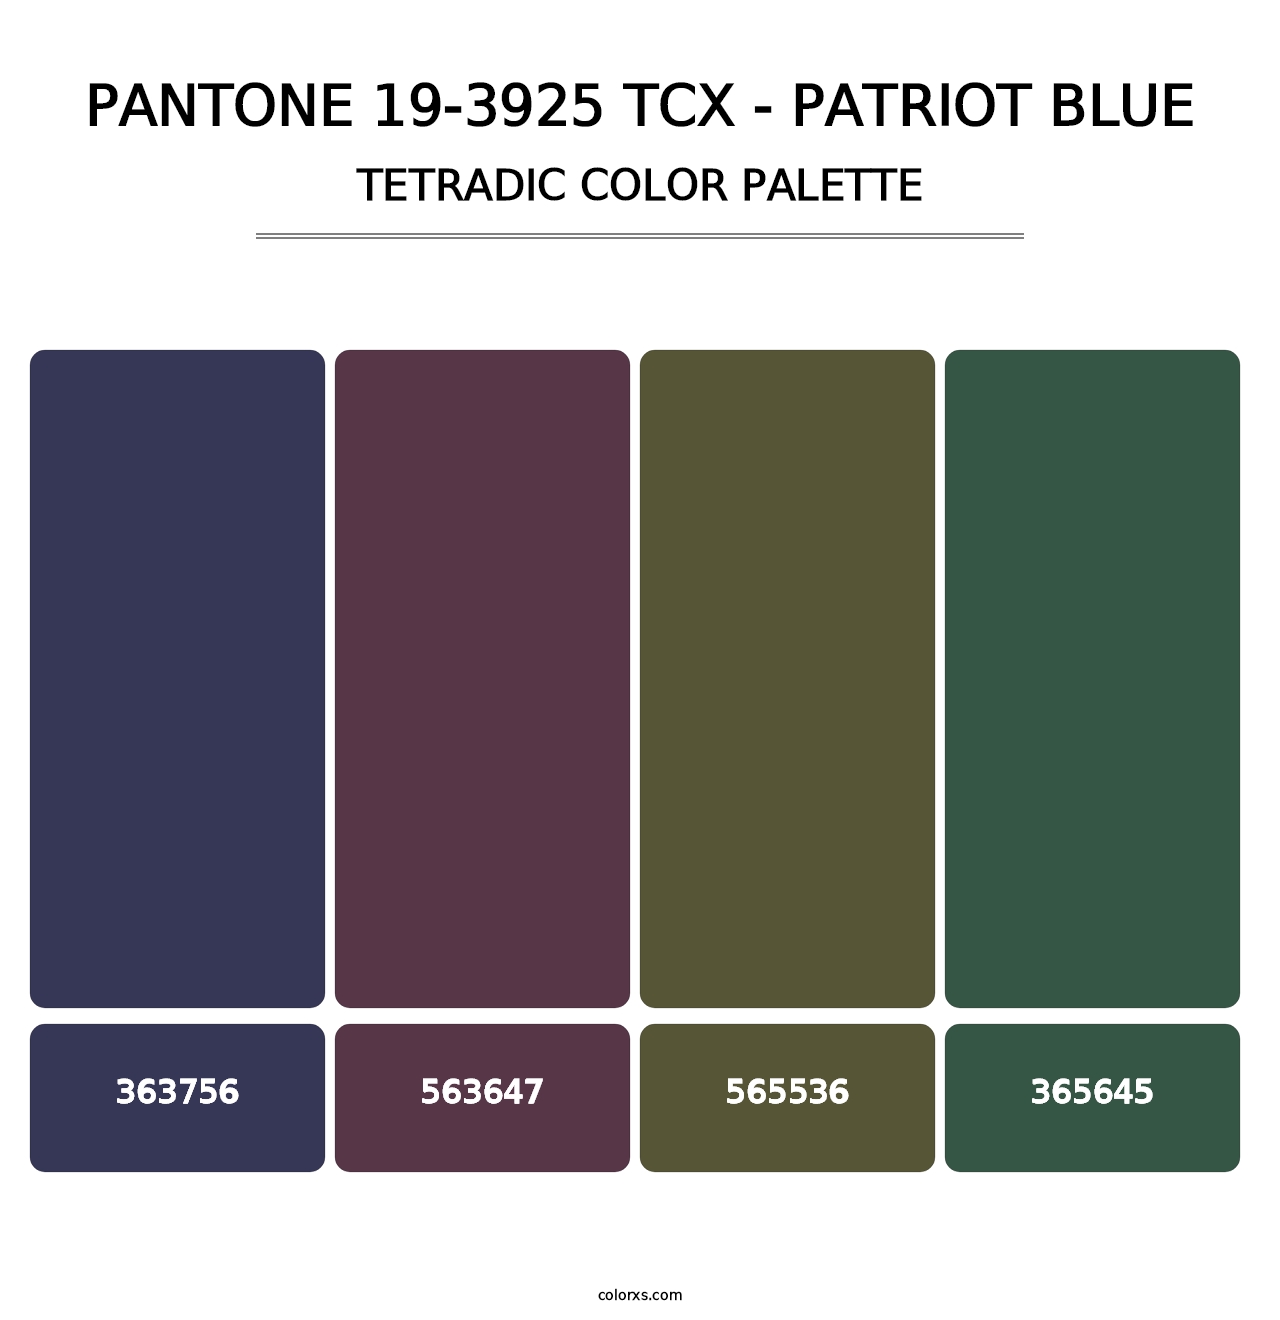 PANTONE 19-3925 TCX - Patriot Blue - Tetradic Color Palette